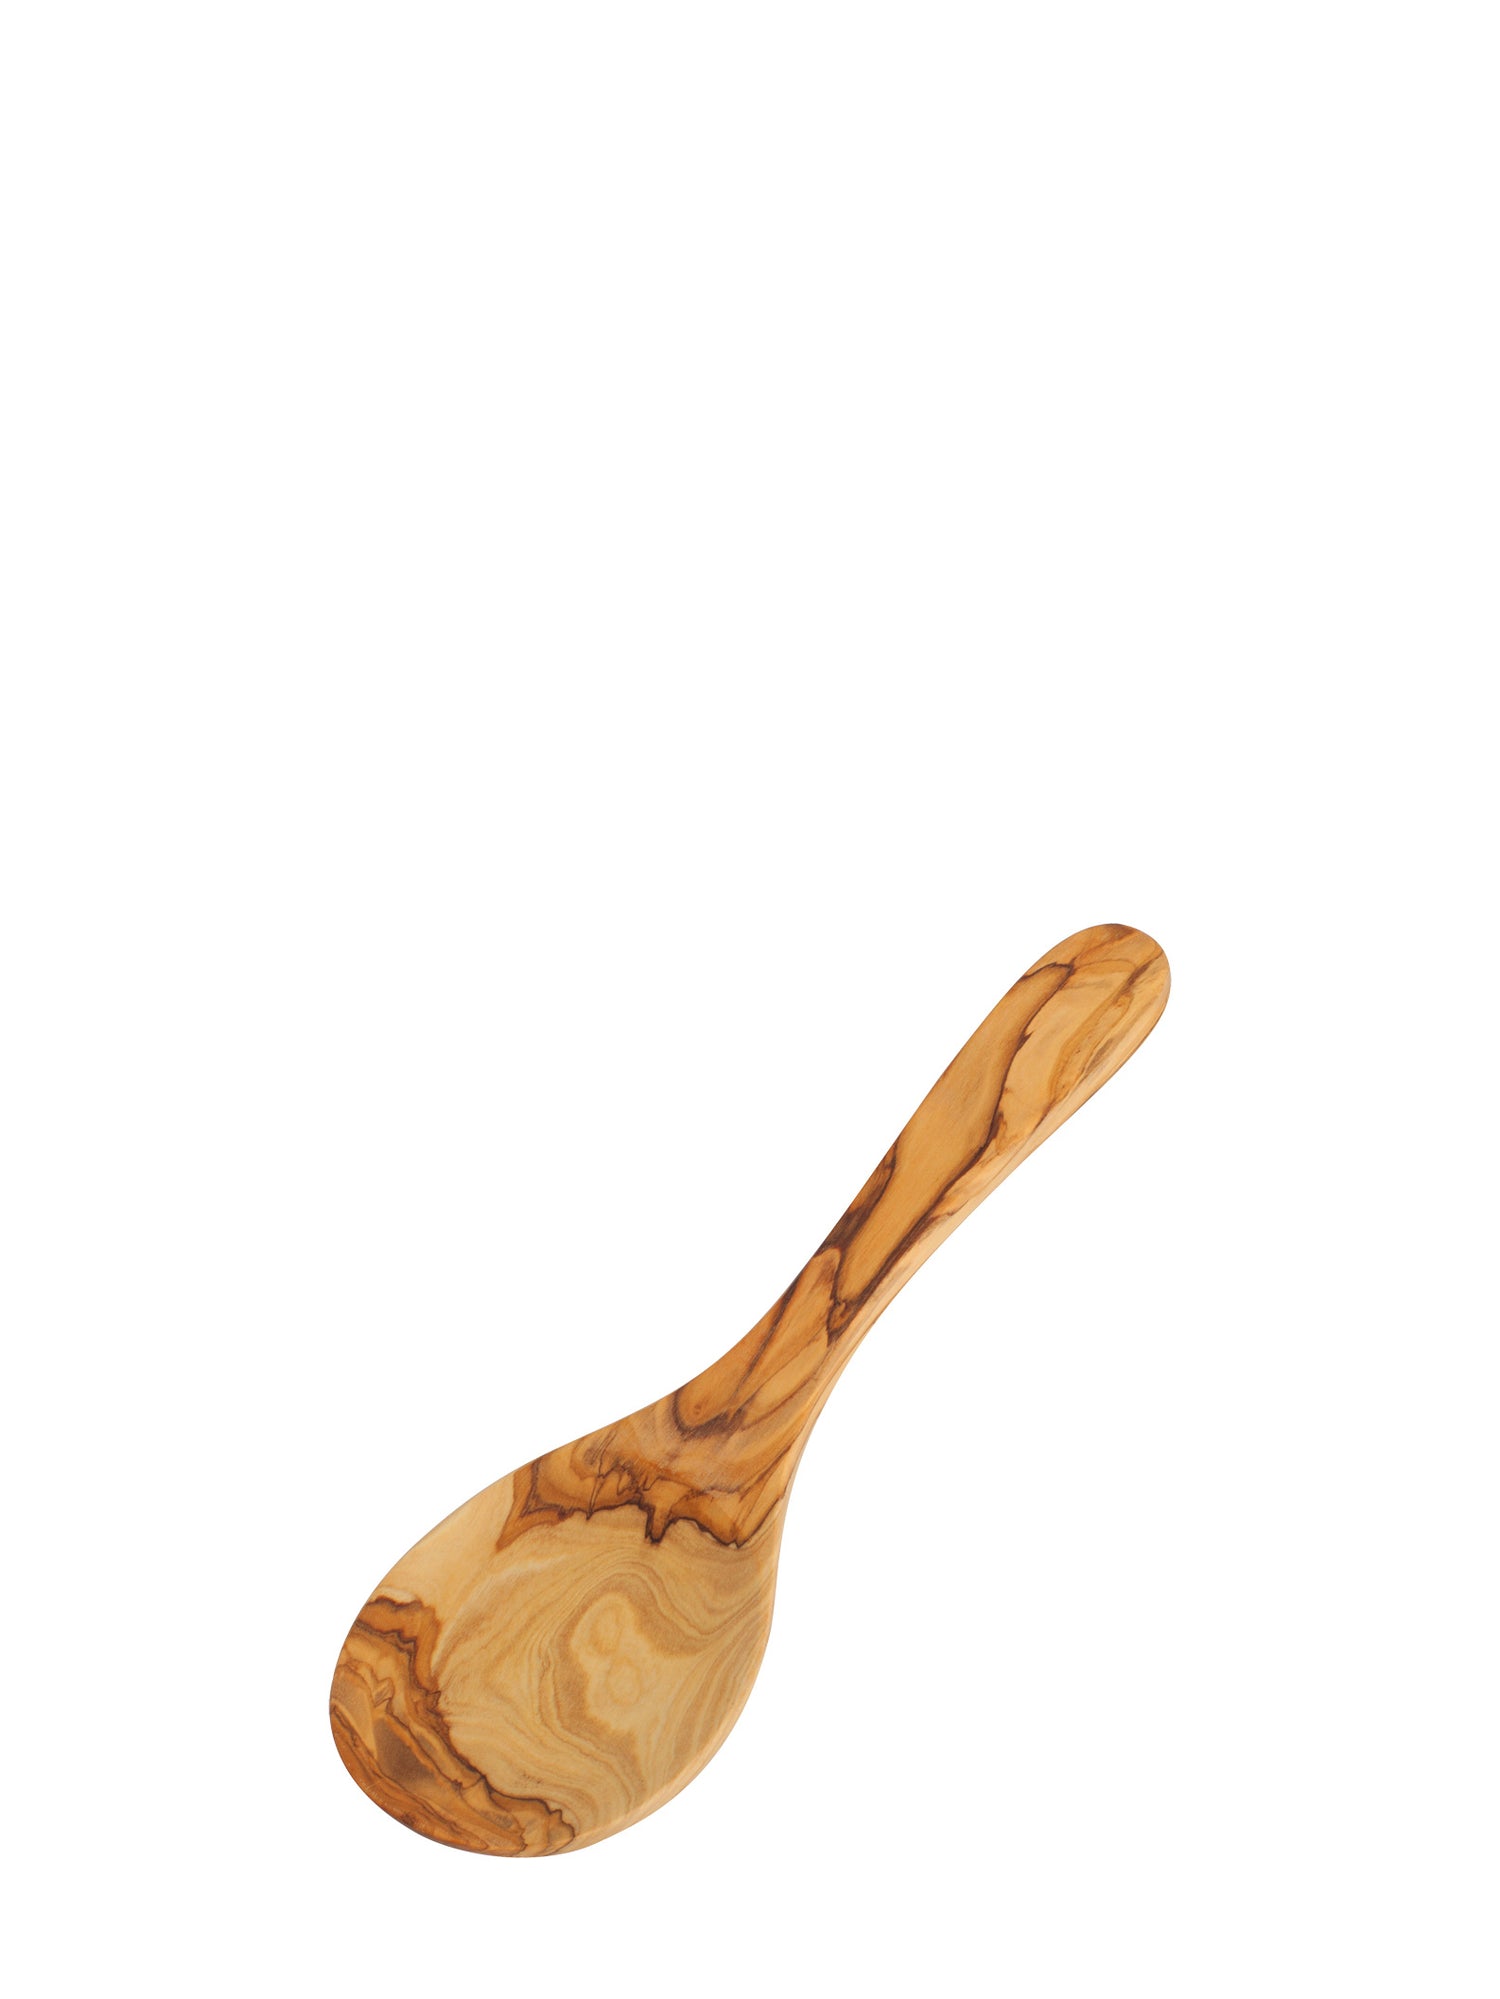 Rice paddle, olive wood